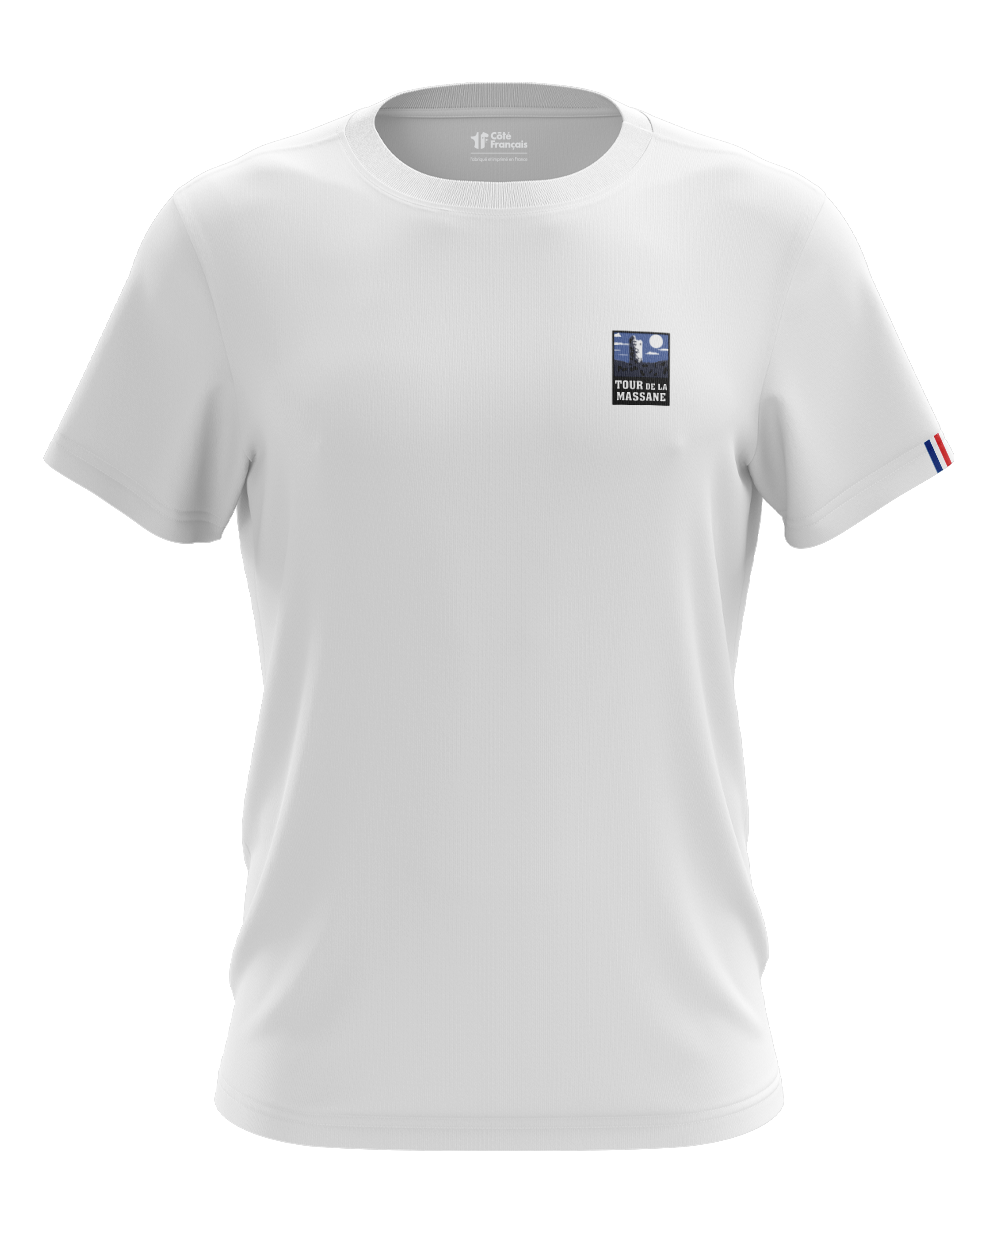 T-Shirt "Tour de la massane" - blanc